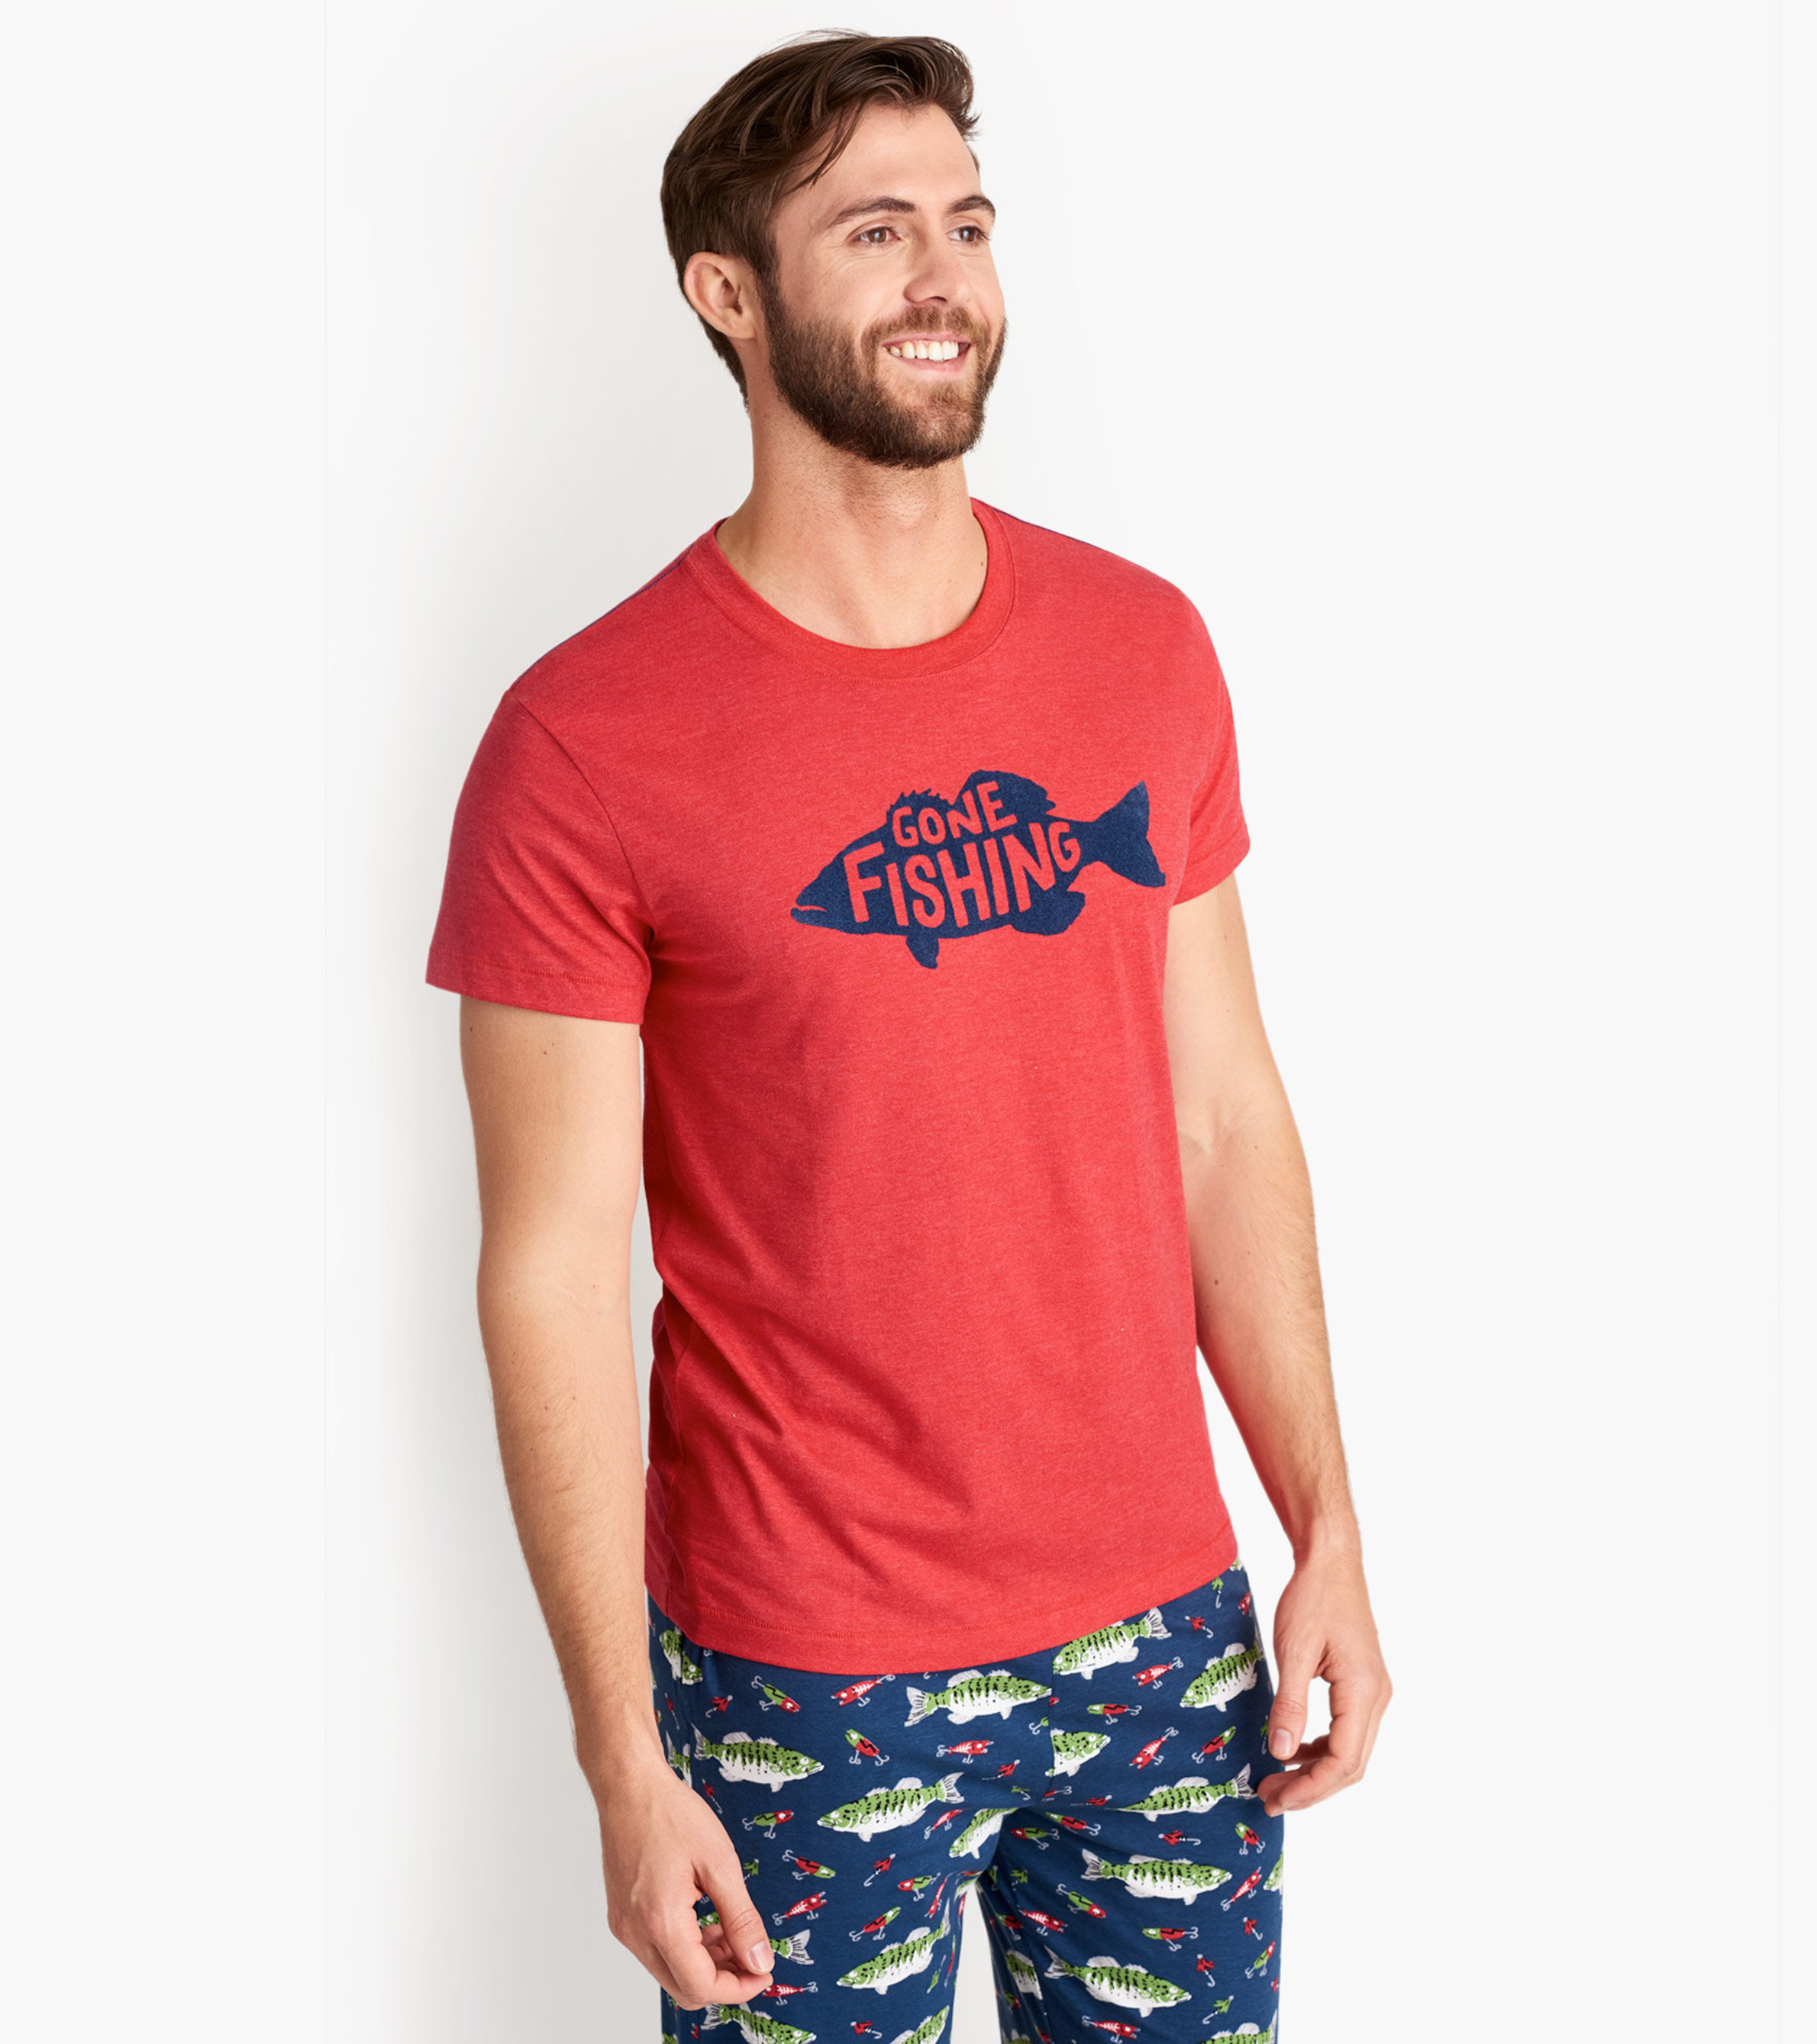 Fishing Shirt - Fishing Is Like Cool Fishing Tee' Men's T-Shirt